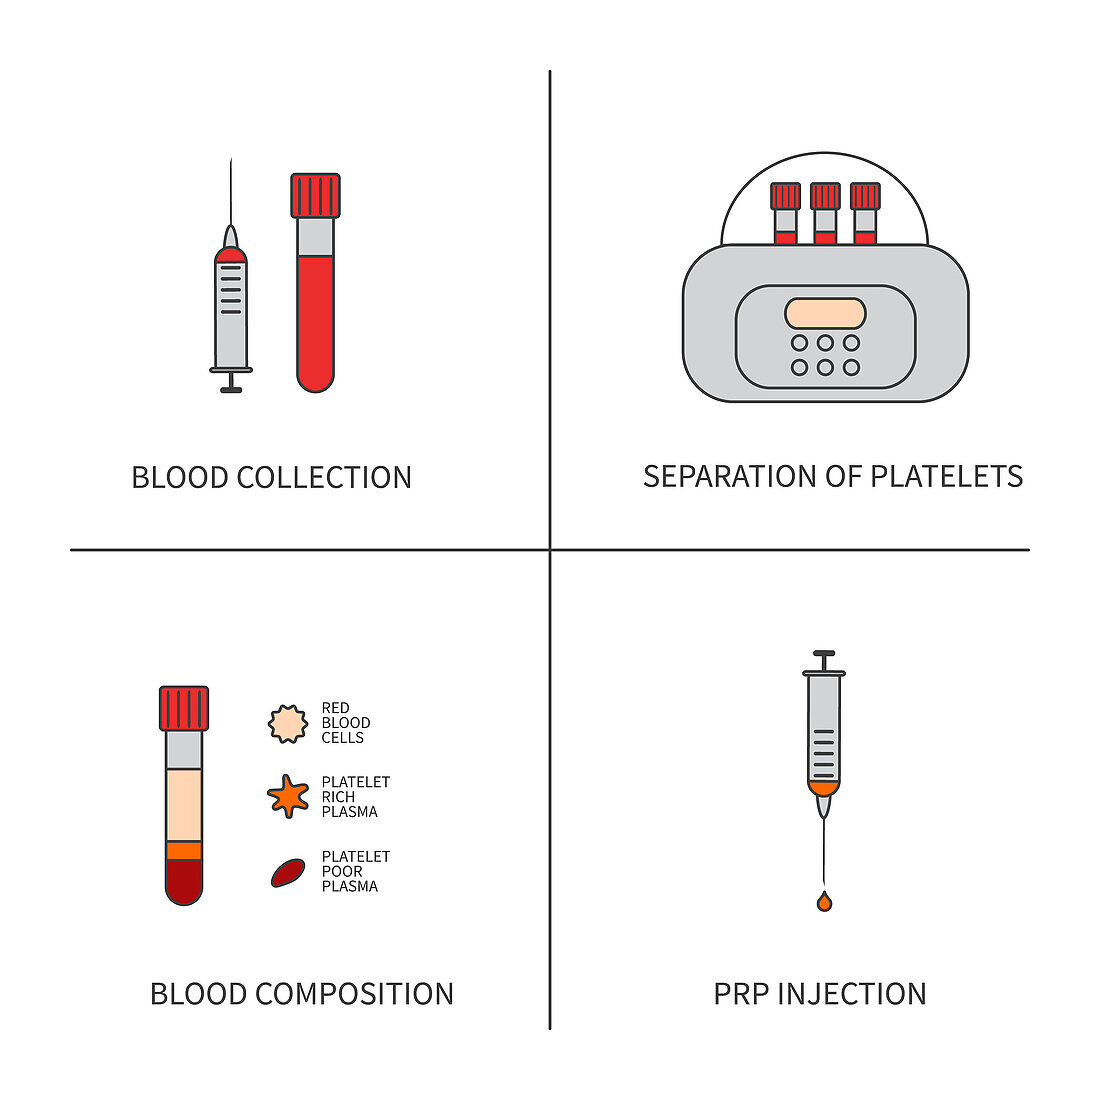 Platelet rich plasma, conceptual illustration